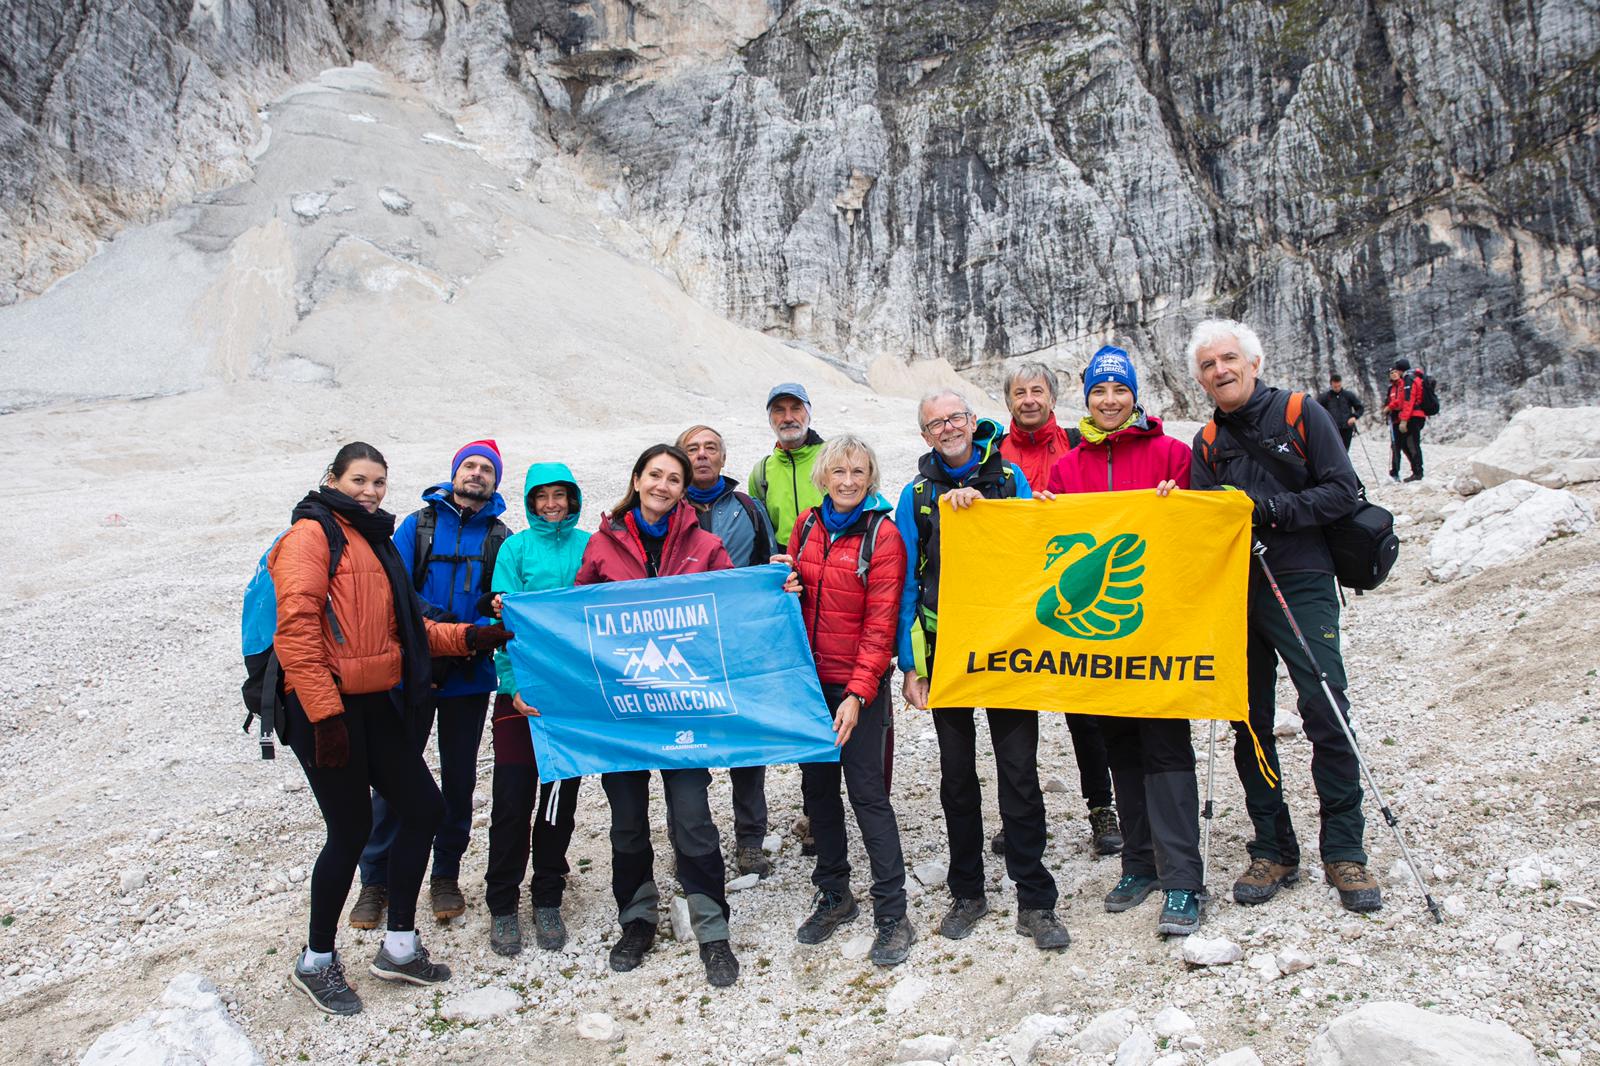 Gruppo di persone in montagna, tengono in mano la bandiera di Legambiente e quella della Carovana dei ghiacciai